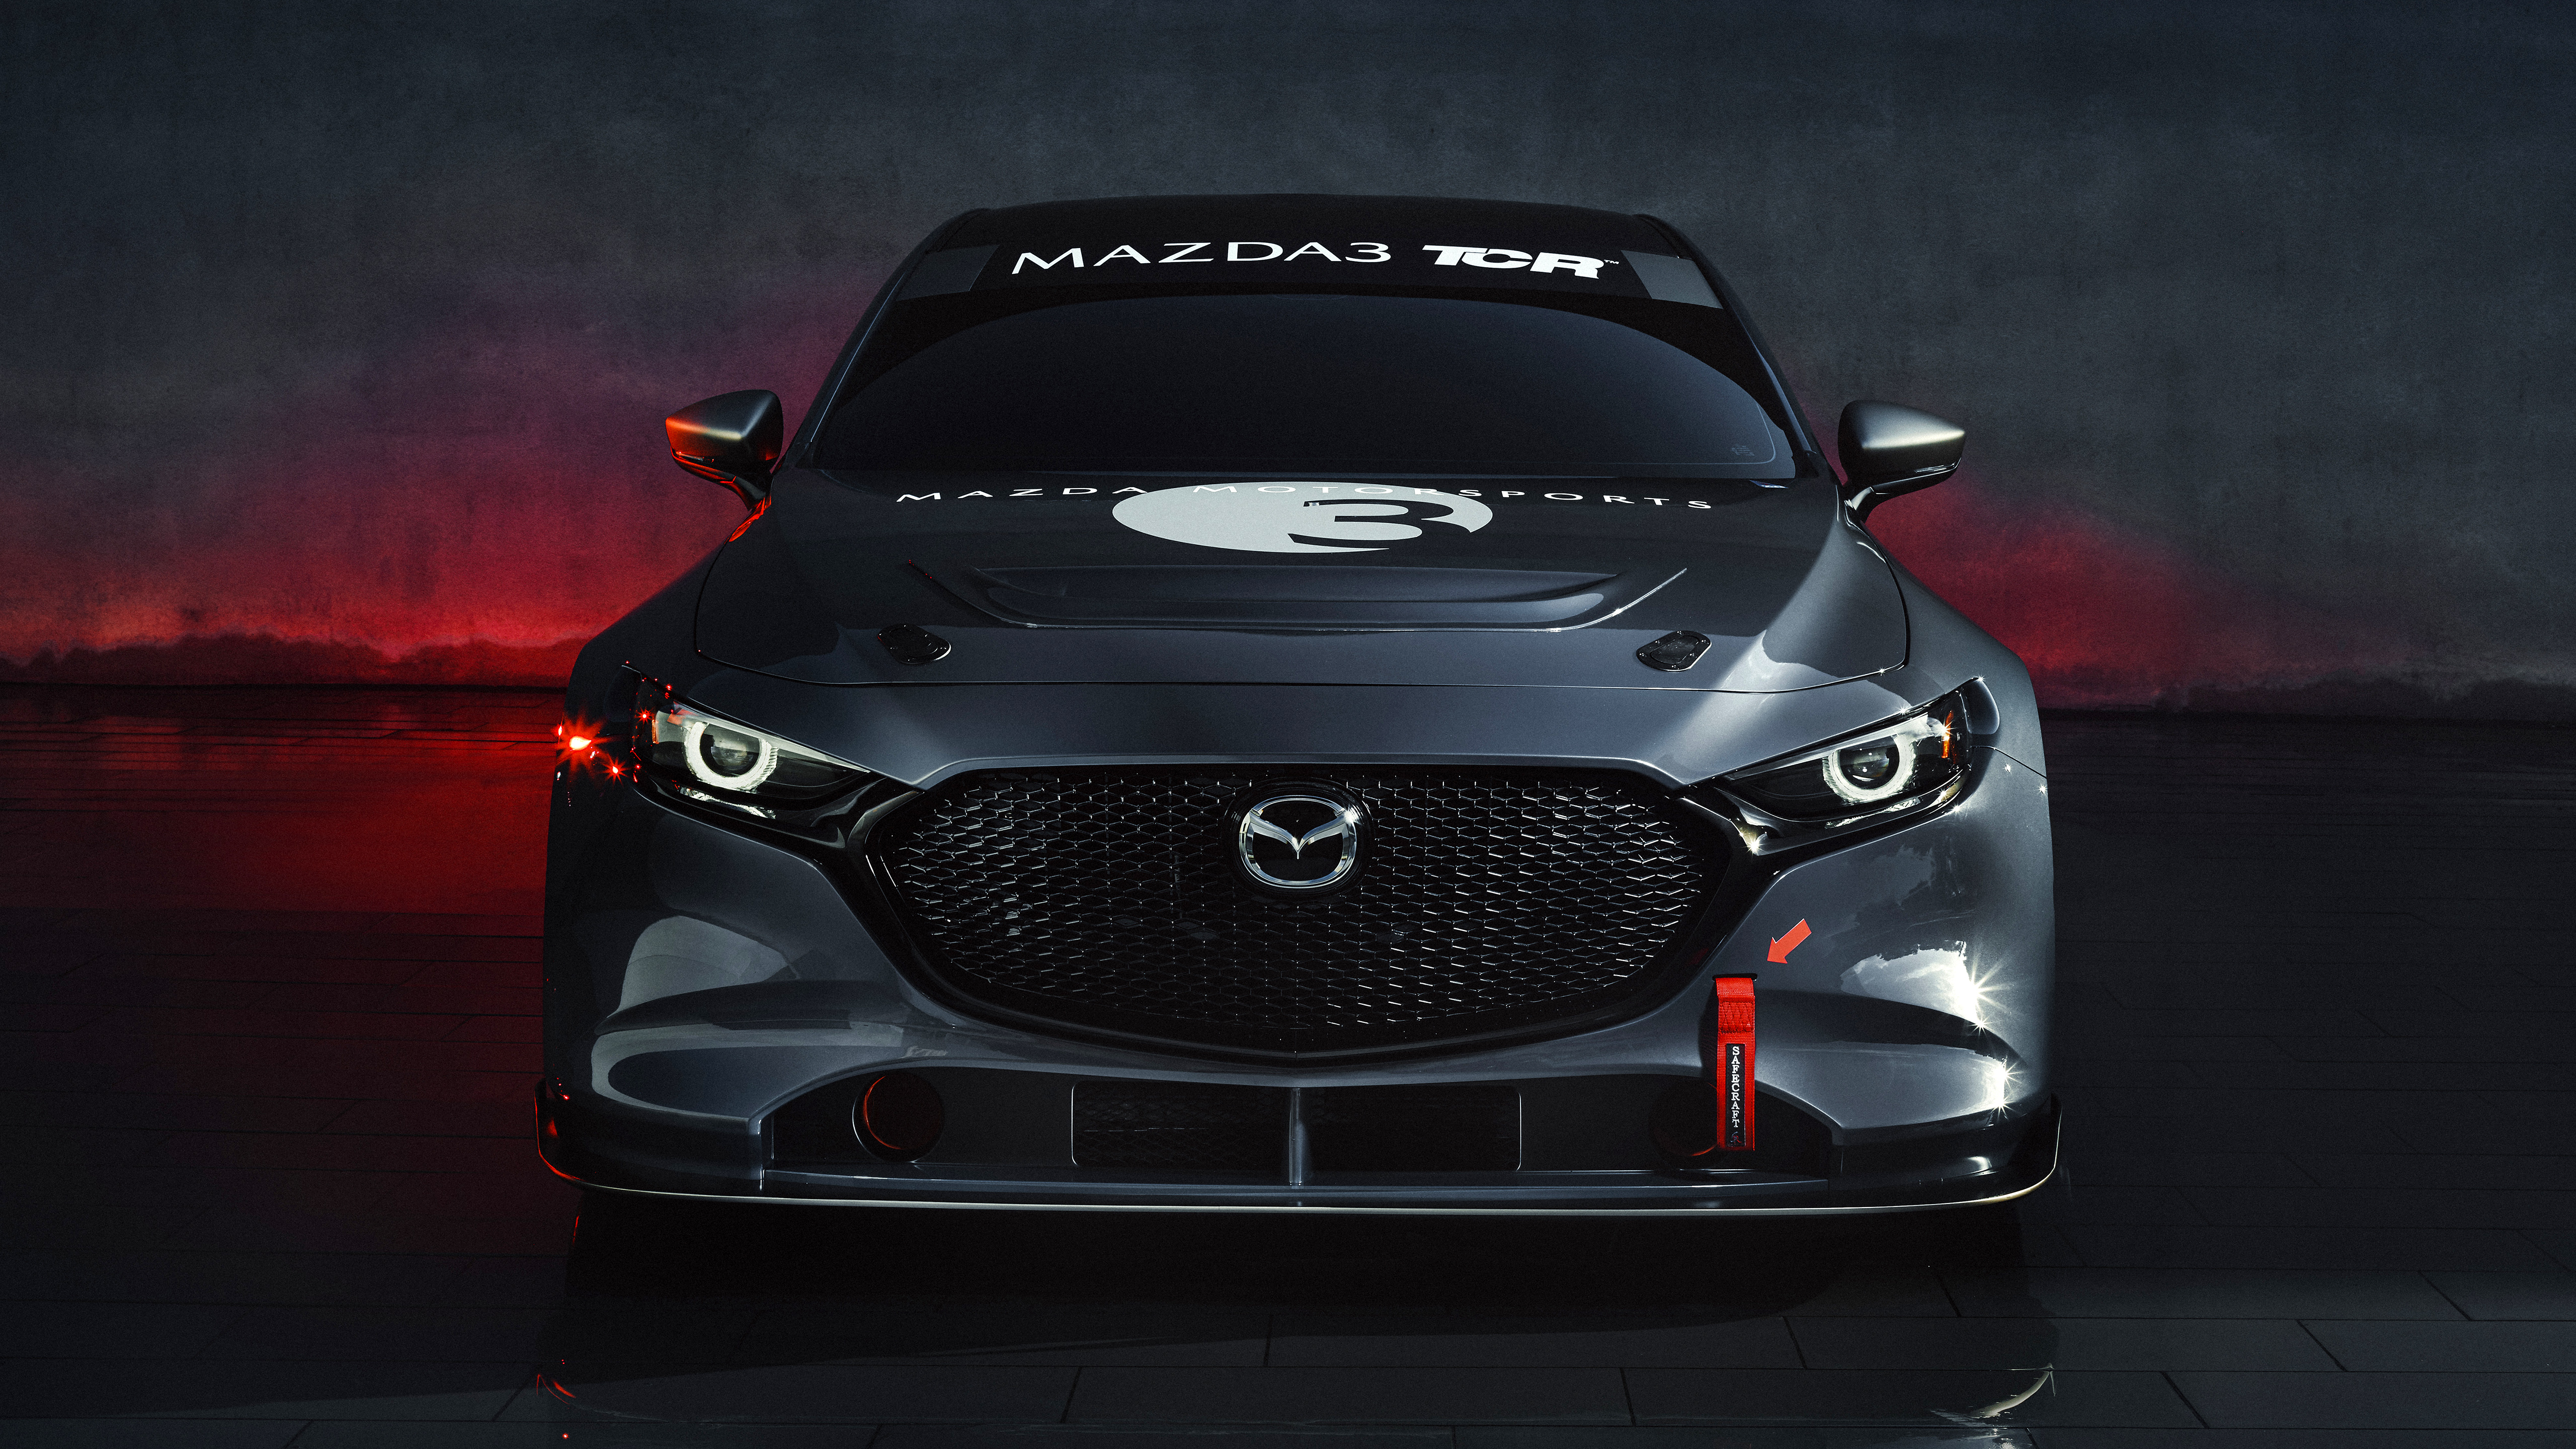 Mazda3 TCR 2019 4K Wallpaper | HD Car Wallpapers | ID #13362